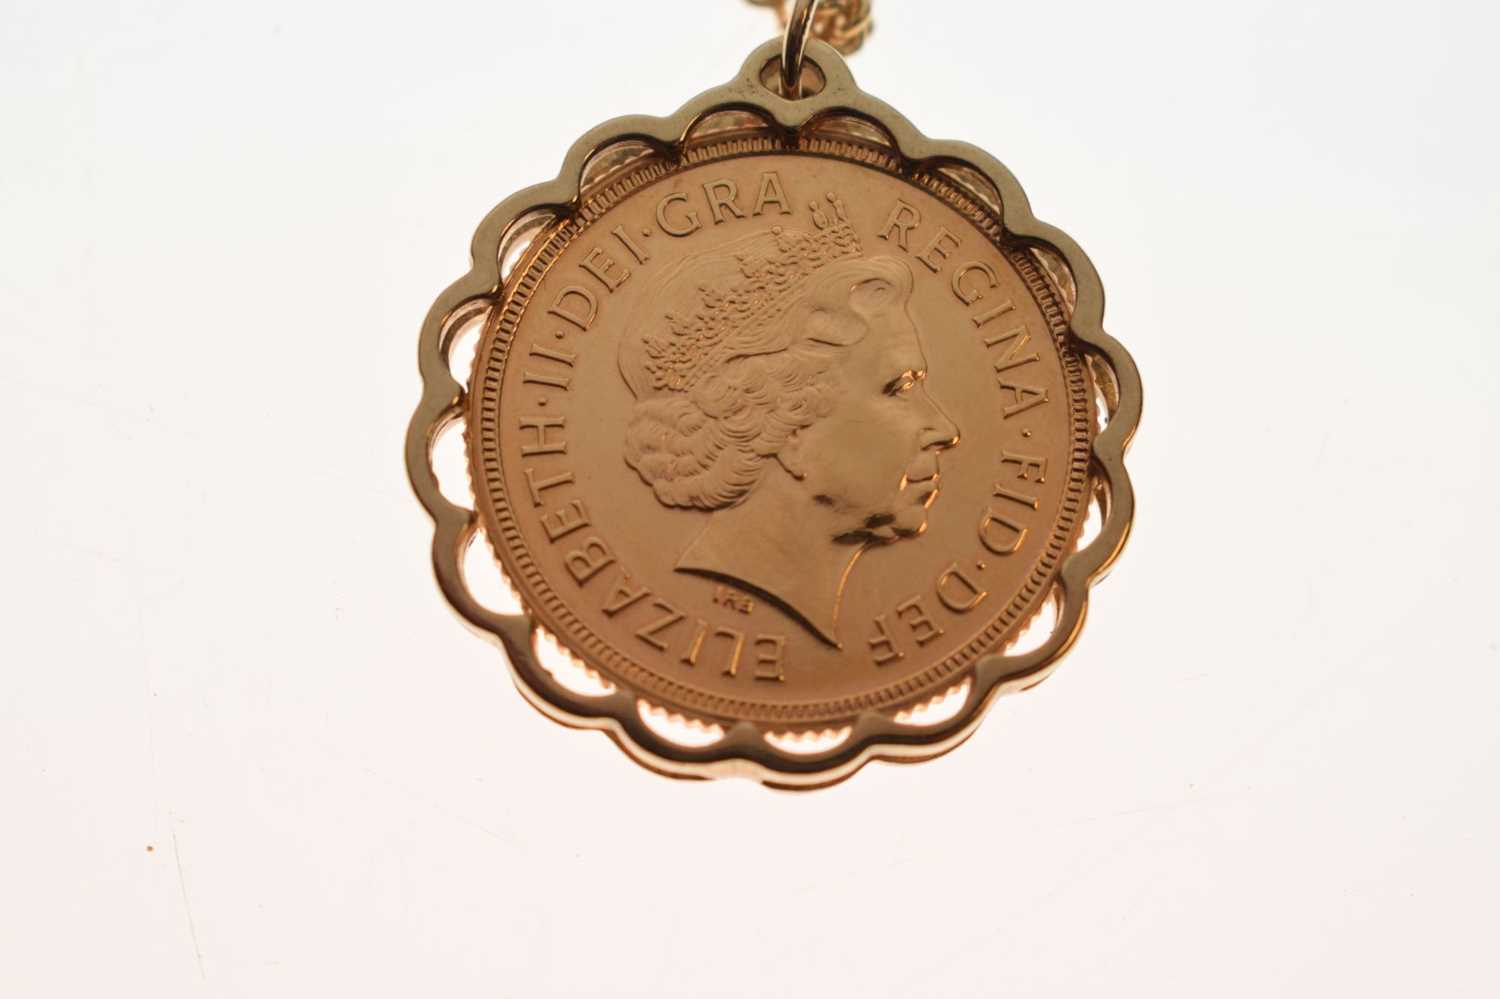 Elizabeth II gold sovereign, 2000 - Image 4 of 7